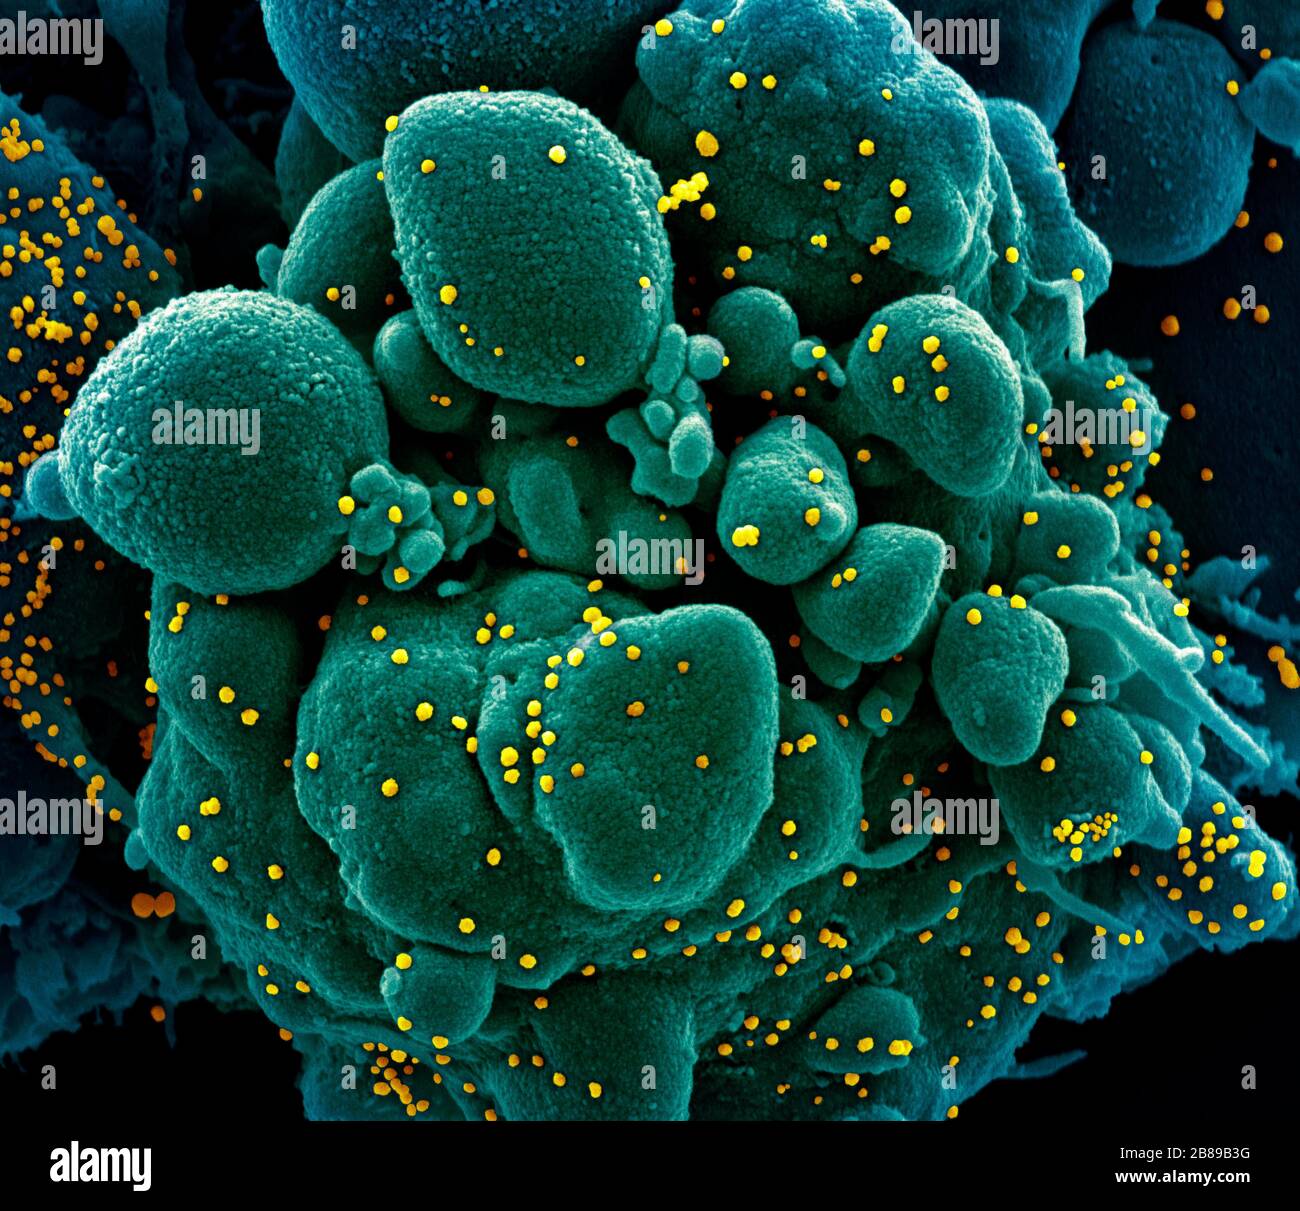 Micrographe électronique de transmission de COVID-19, nouveau coronavirus, cellule apoptotique fortement infectée par les particules du virus SRAS-COV-2, isolé d'un échantillon de patient à l'installation de recherche intégrée NIAID le 19 mars 2020 à fort Detrick, Maryland. Banque D'Images